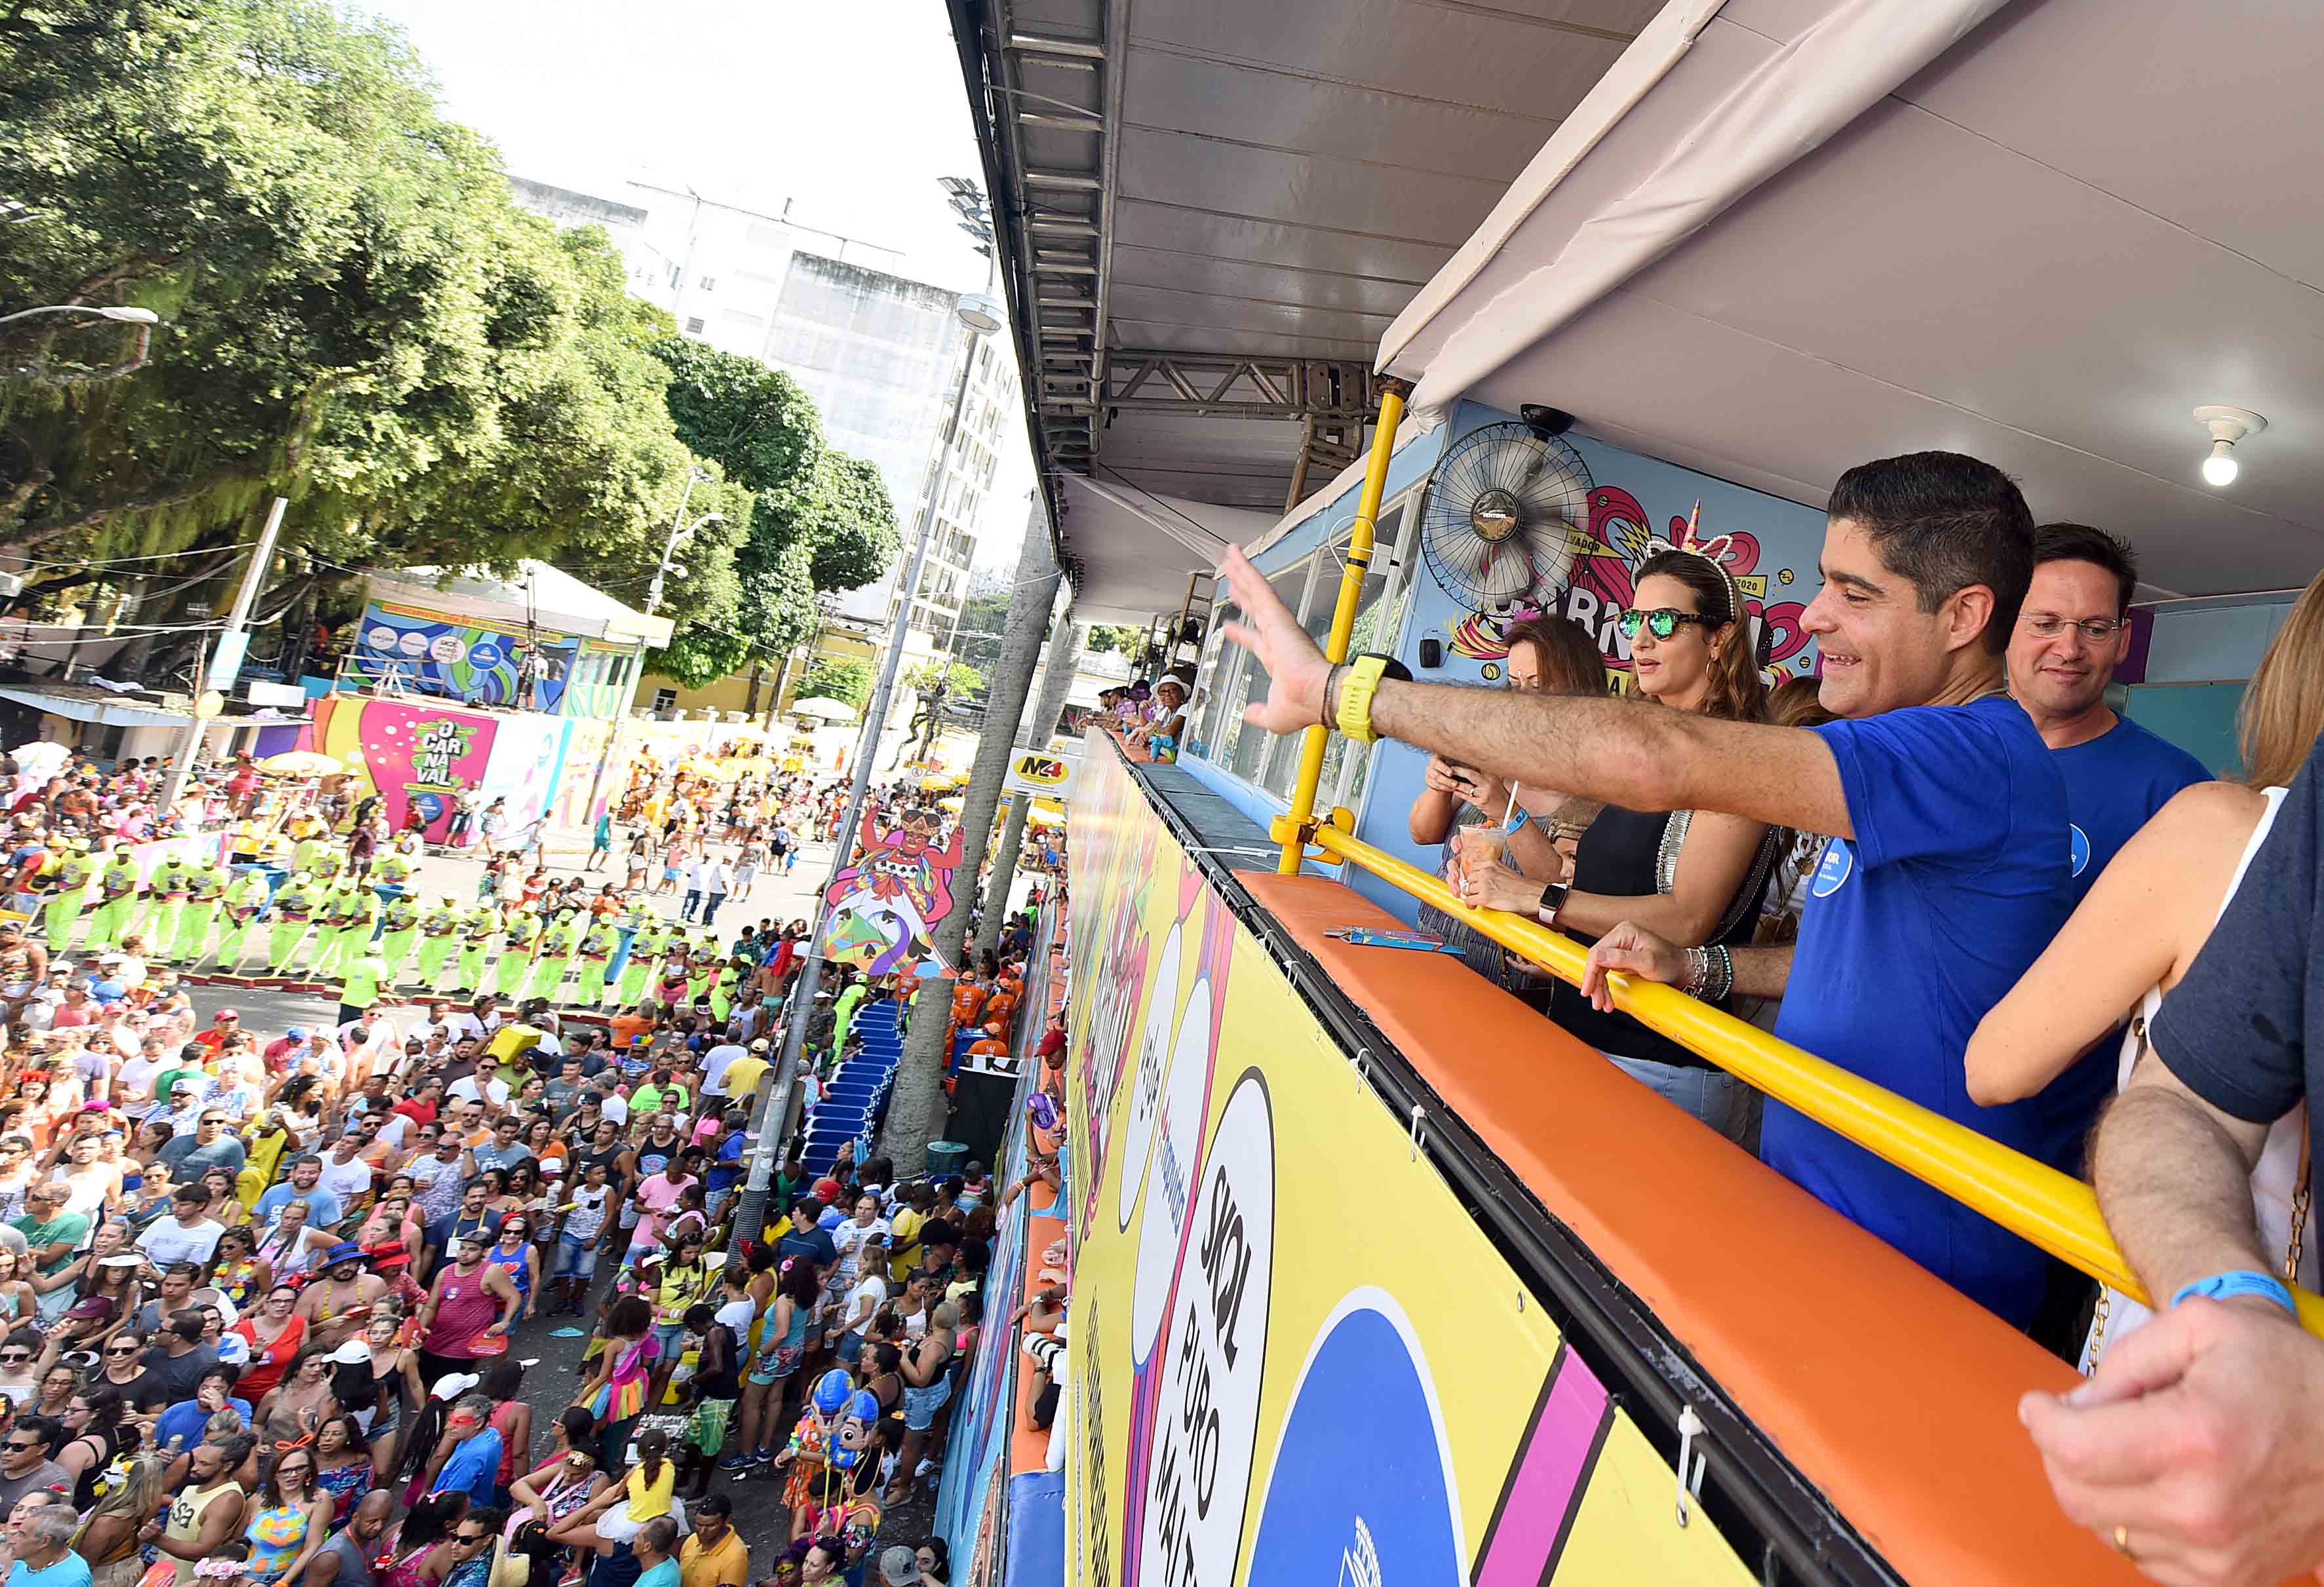 ACM Neto comenta recorde de público no sábado de Carnaval: "Nunca vi tanta gente"